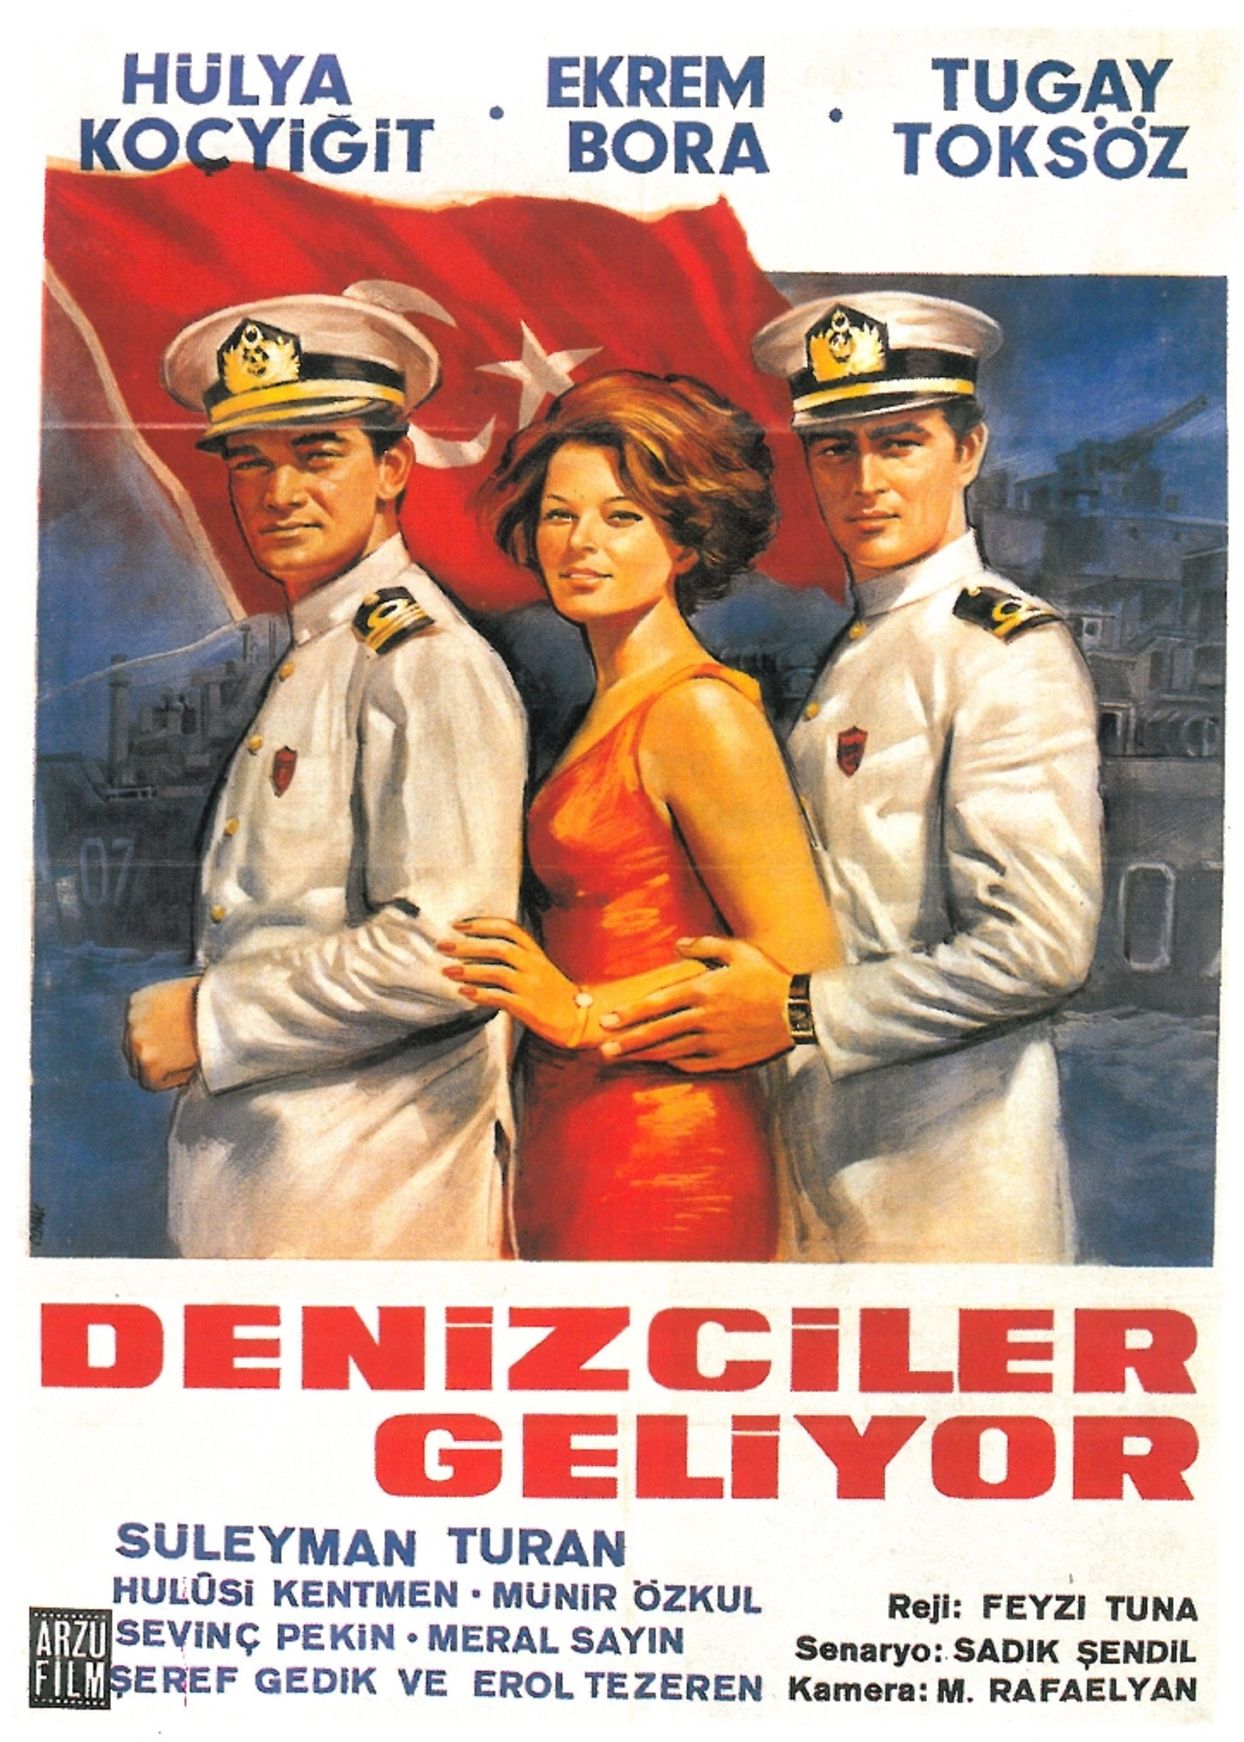 Feyzi Tuna'nın yönettiği 1966 yapımı 'Denizciler Geliyor'da Hülya Koçyiğit, başrolleri Ekrem Bora ve Tugay Toköz ile paylaştı.